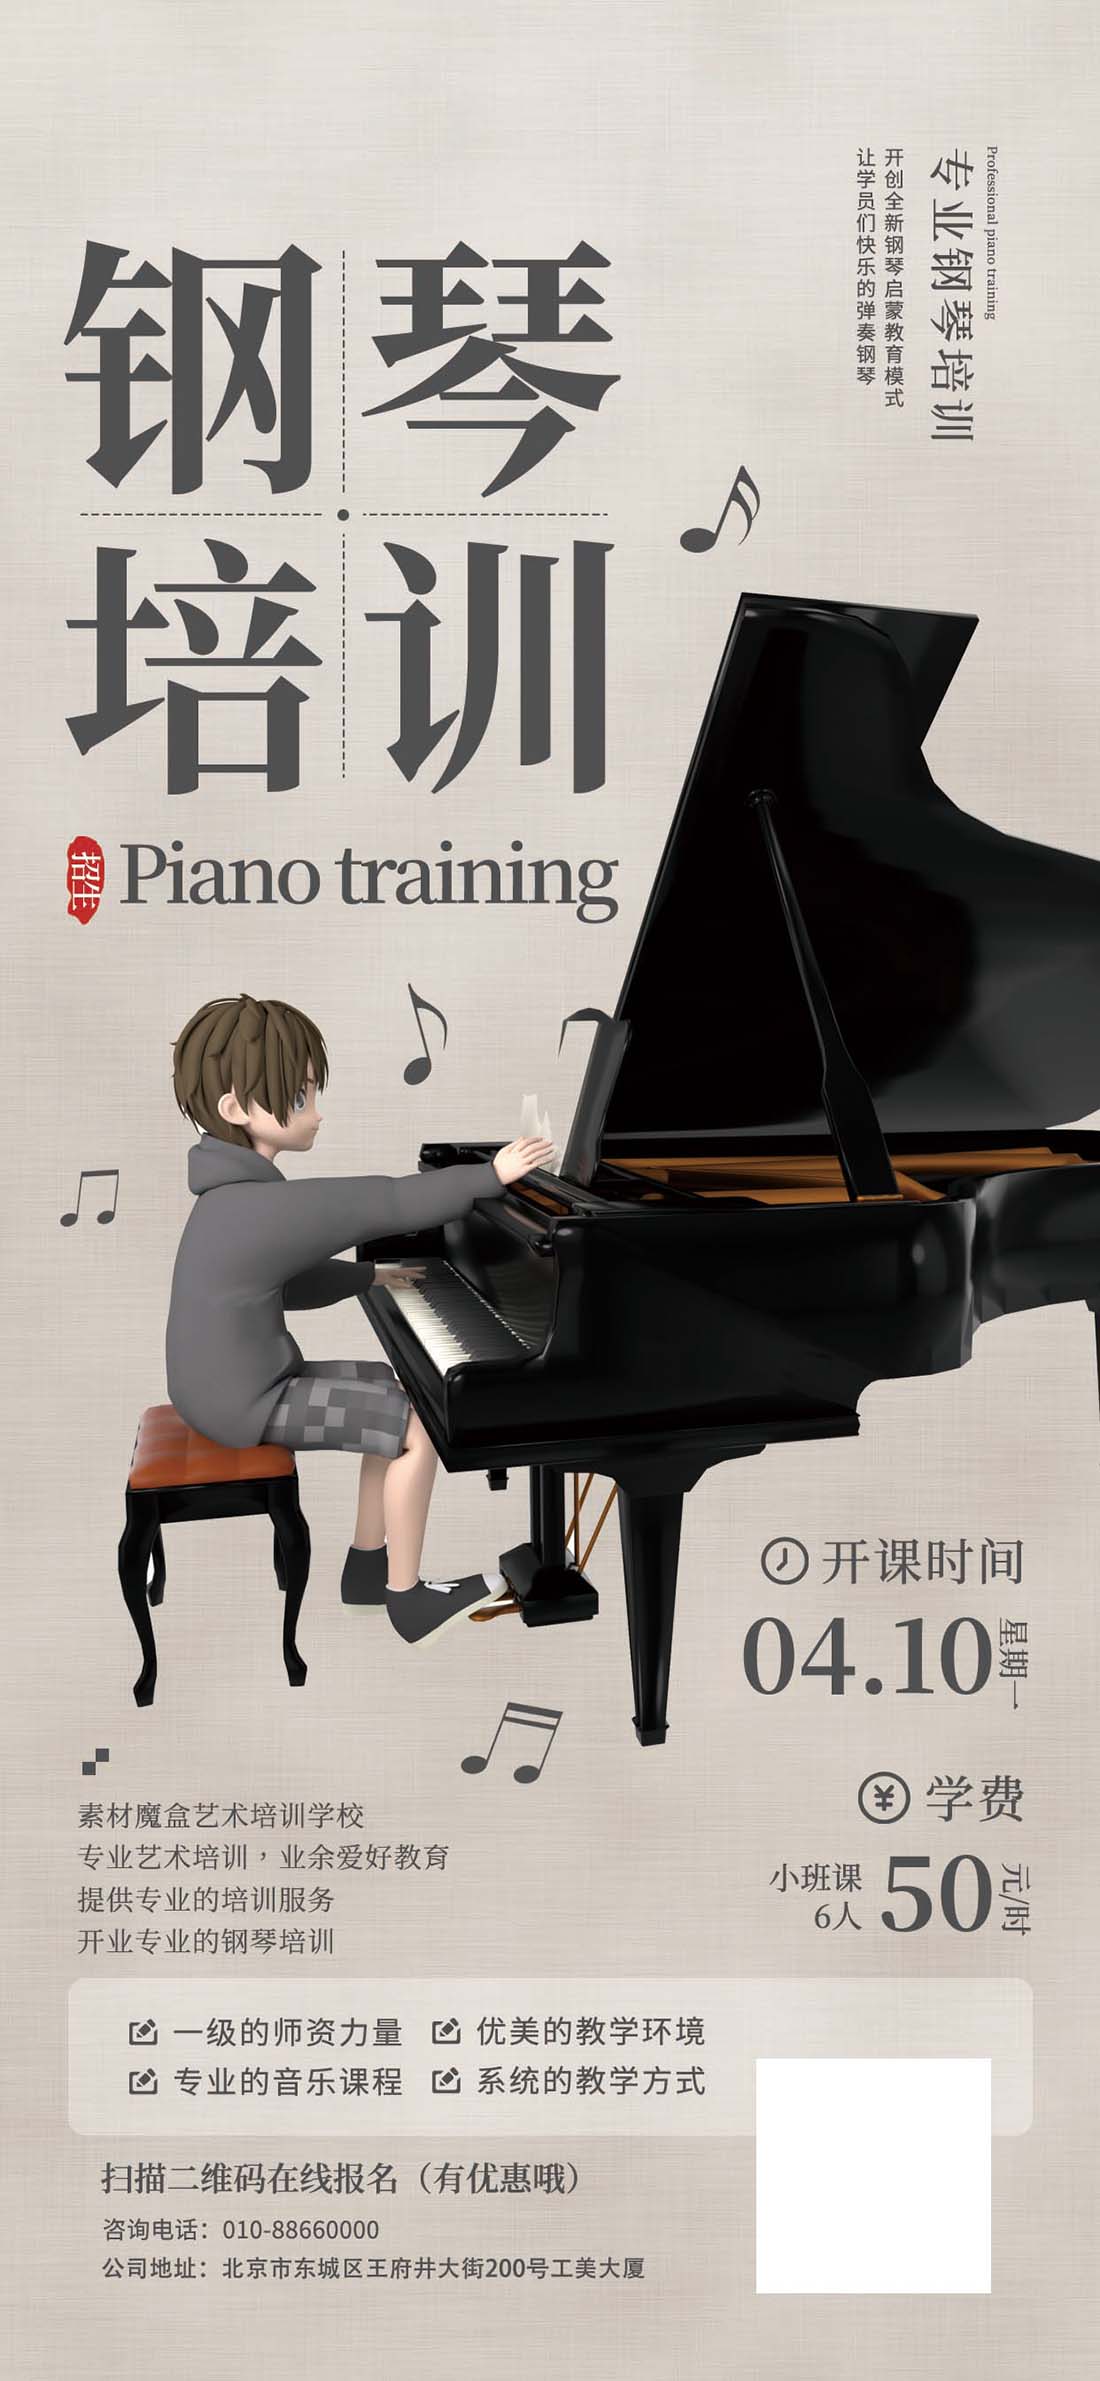 钢琴培训班艺术教育招生活动宣传海报PSD源文件